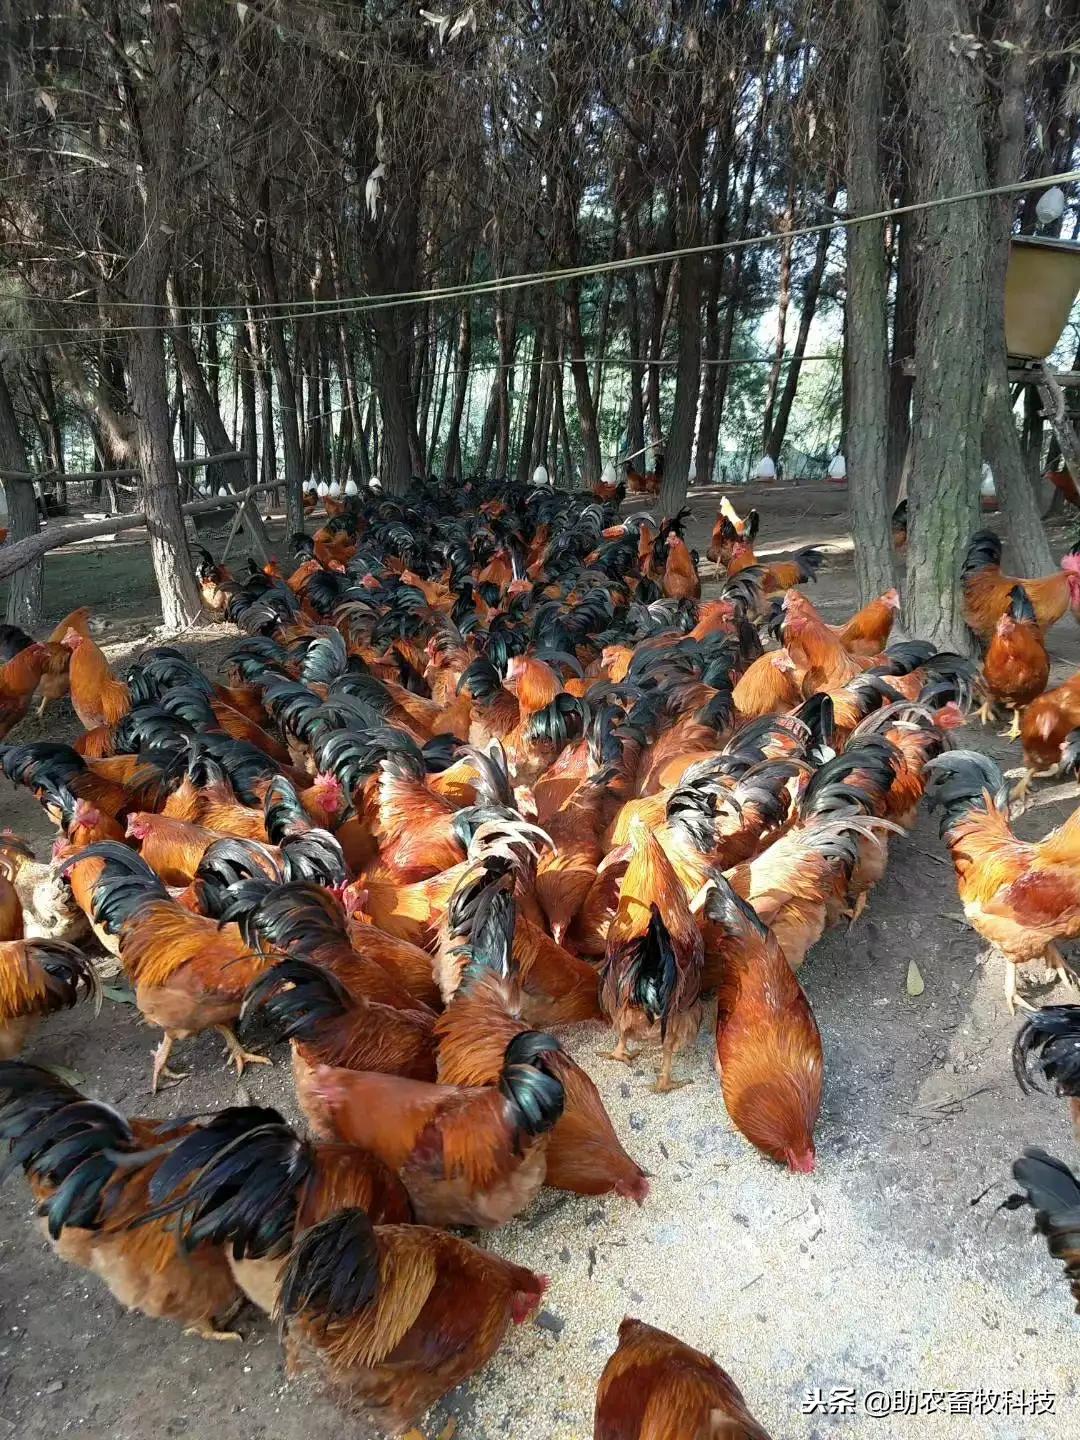 组图一组采用养鸡专用复合益生菌农家饲料放养鸡的现场照片